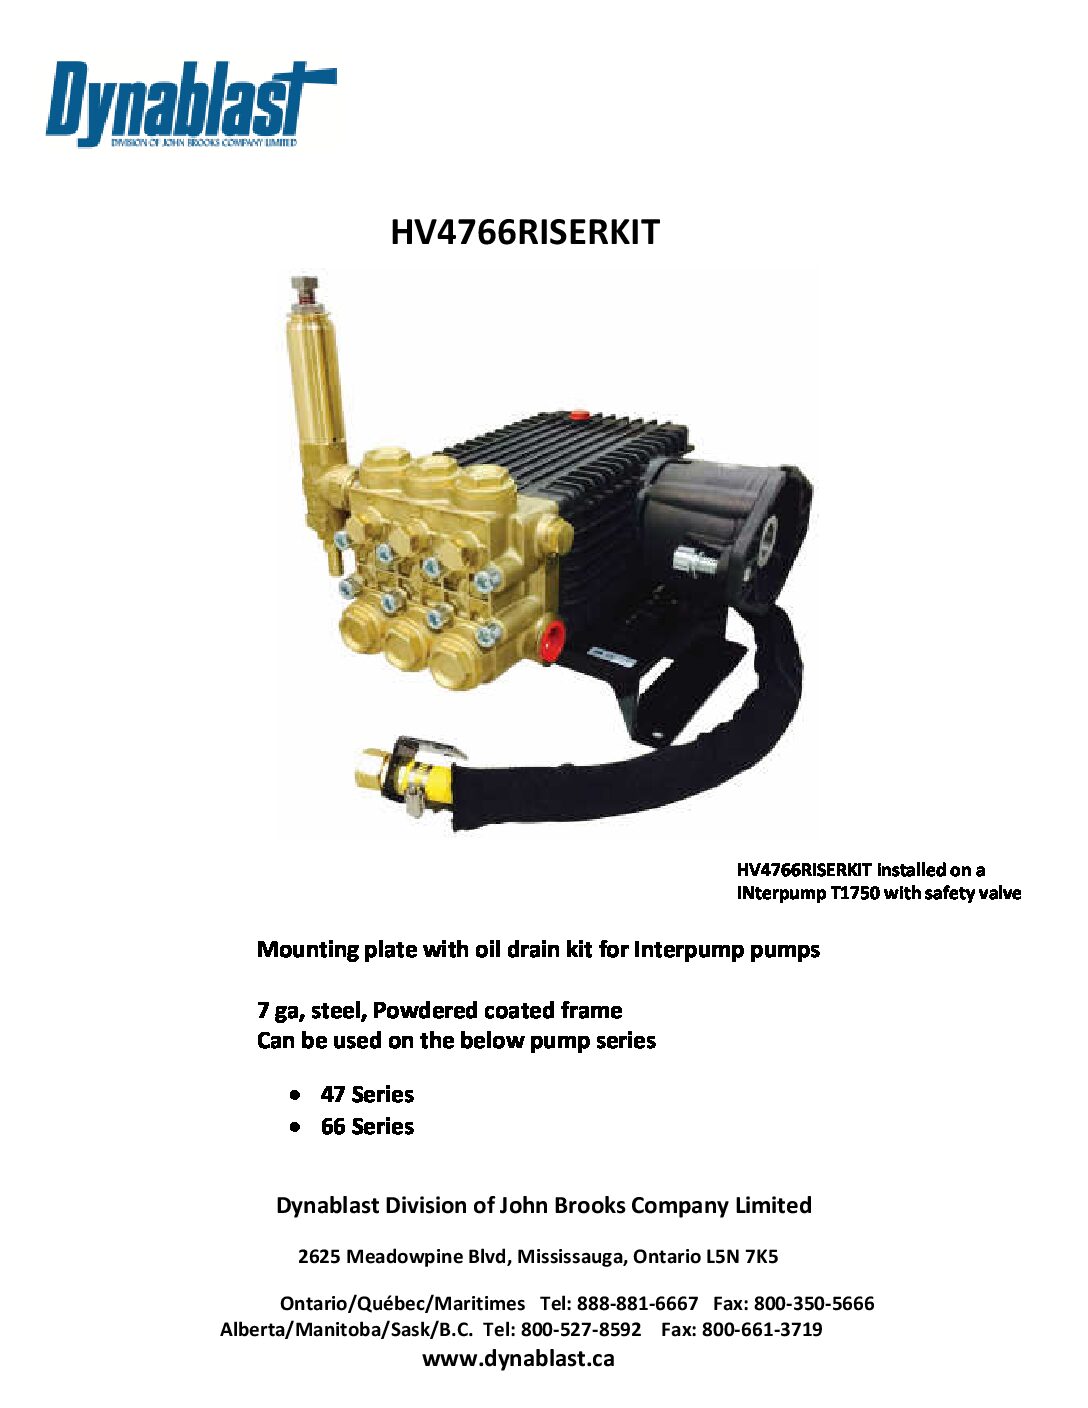 Dynablast Interpump Pump Riser Kit HV4766RISERKIT